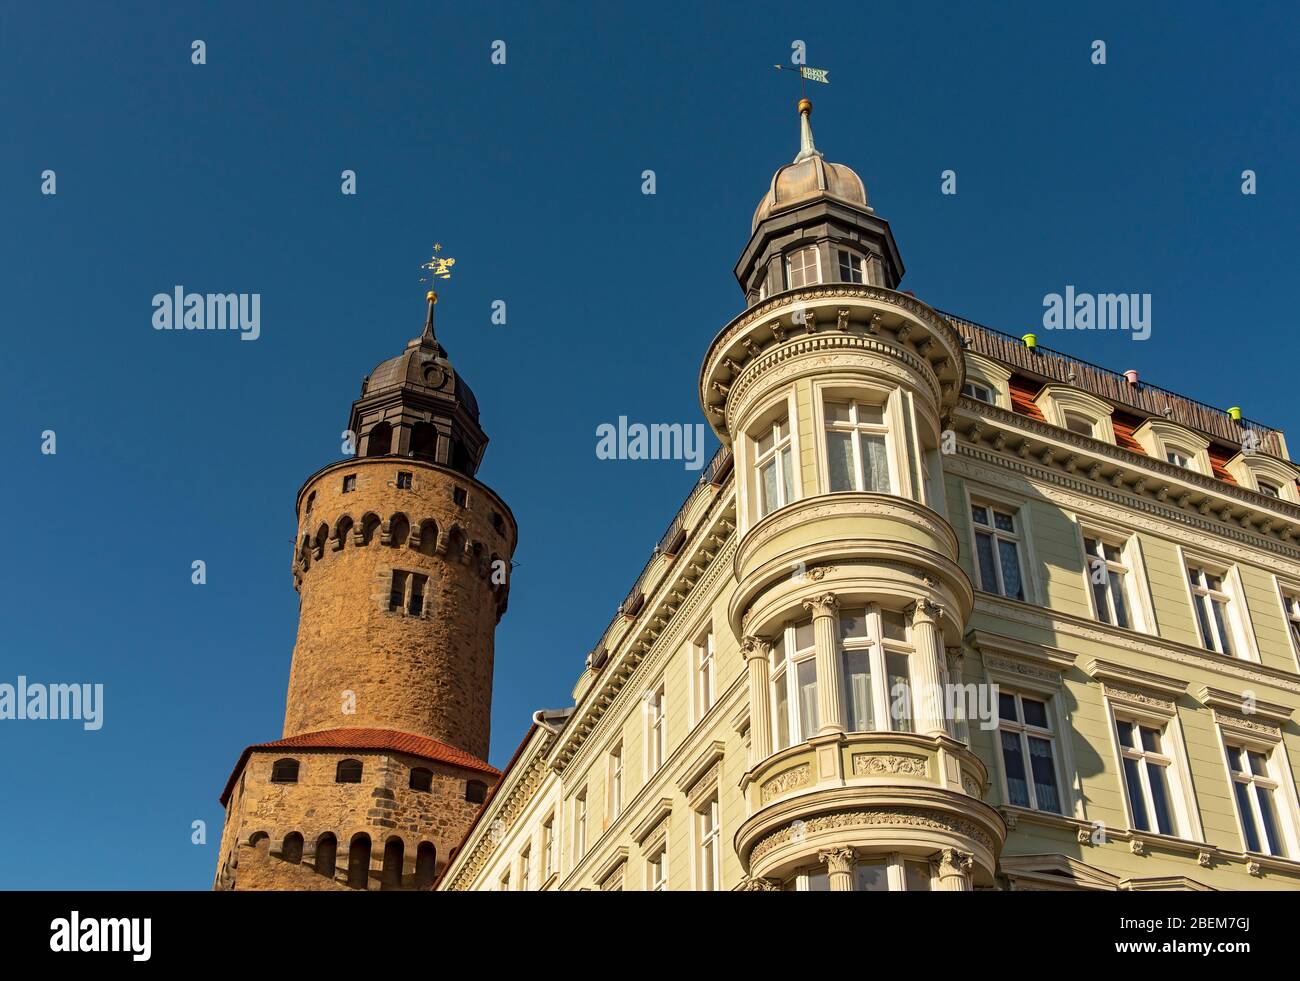 Maison d'angle à Obermarkt 13 et Reichenbach Tower (Reichenbacher Turm), Görlitz (Goerlitz), Allemagne Banque D'Images